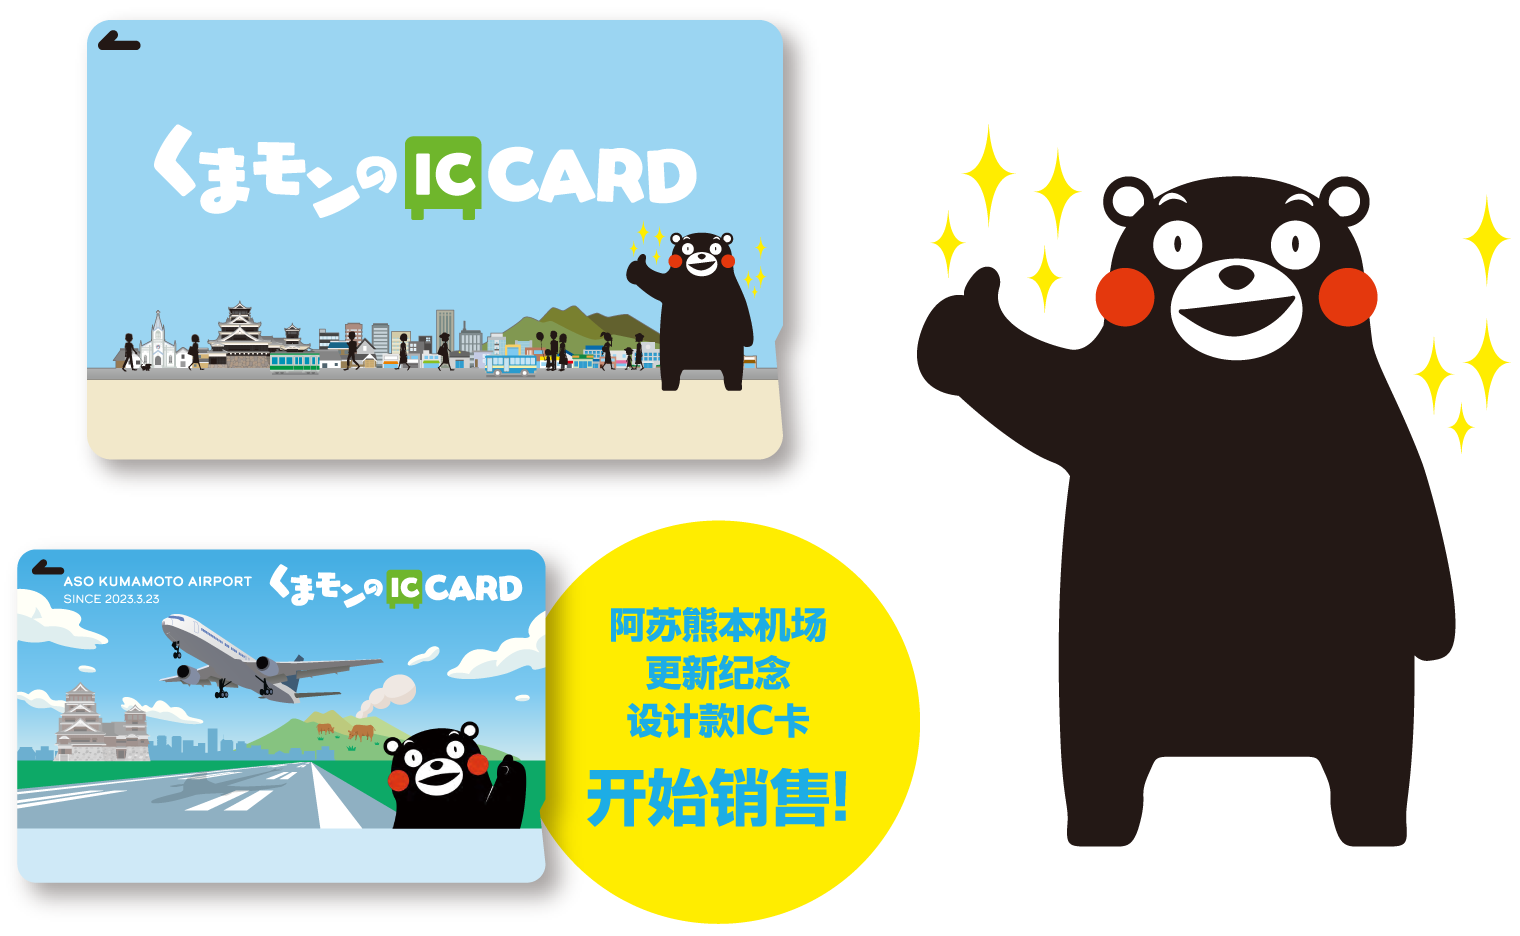 阿苏熊本机场更新纪念设计款IC卡开始销售!